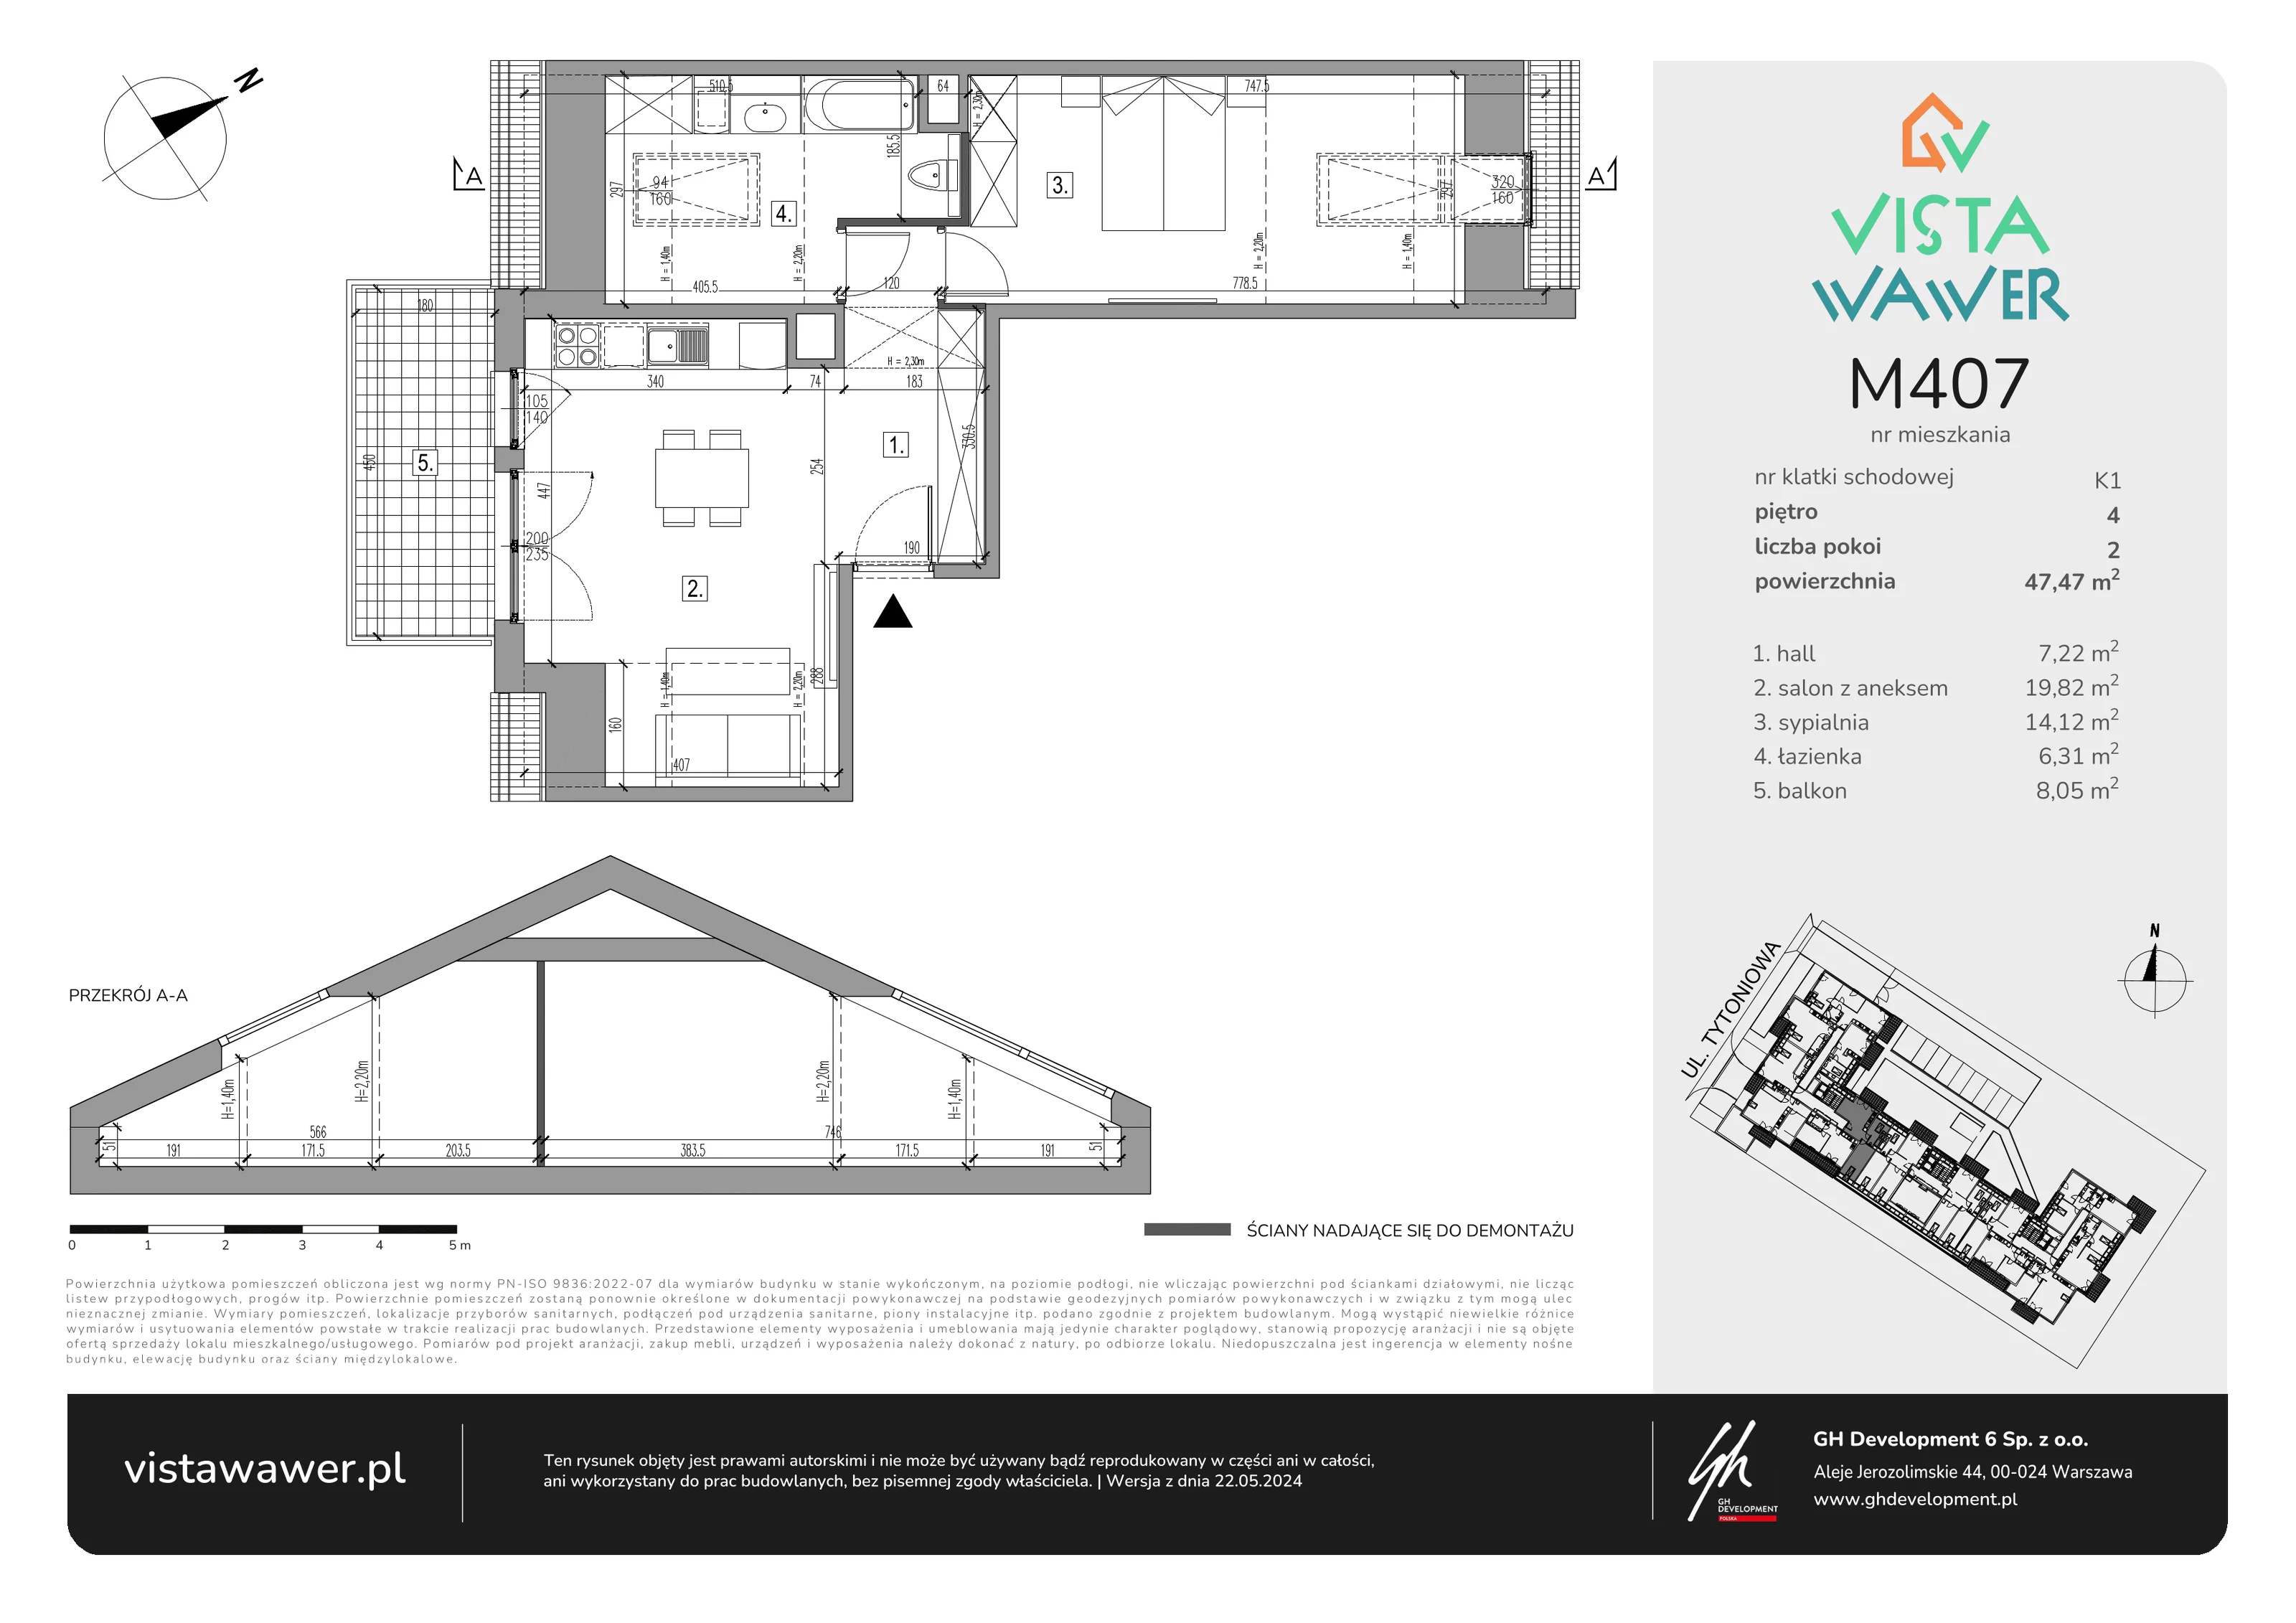 Mieszkanie 47,47 m², piętro 4, oferta nr M407, Vista Wawer, Warszawa, Wawer, Gocławek, ul. Tytoniowa 20